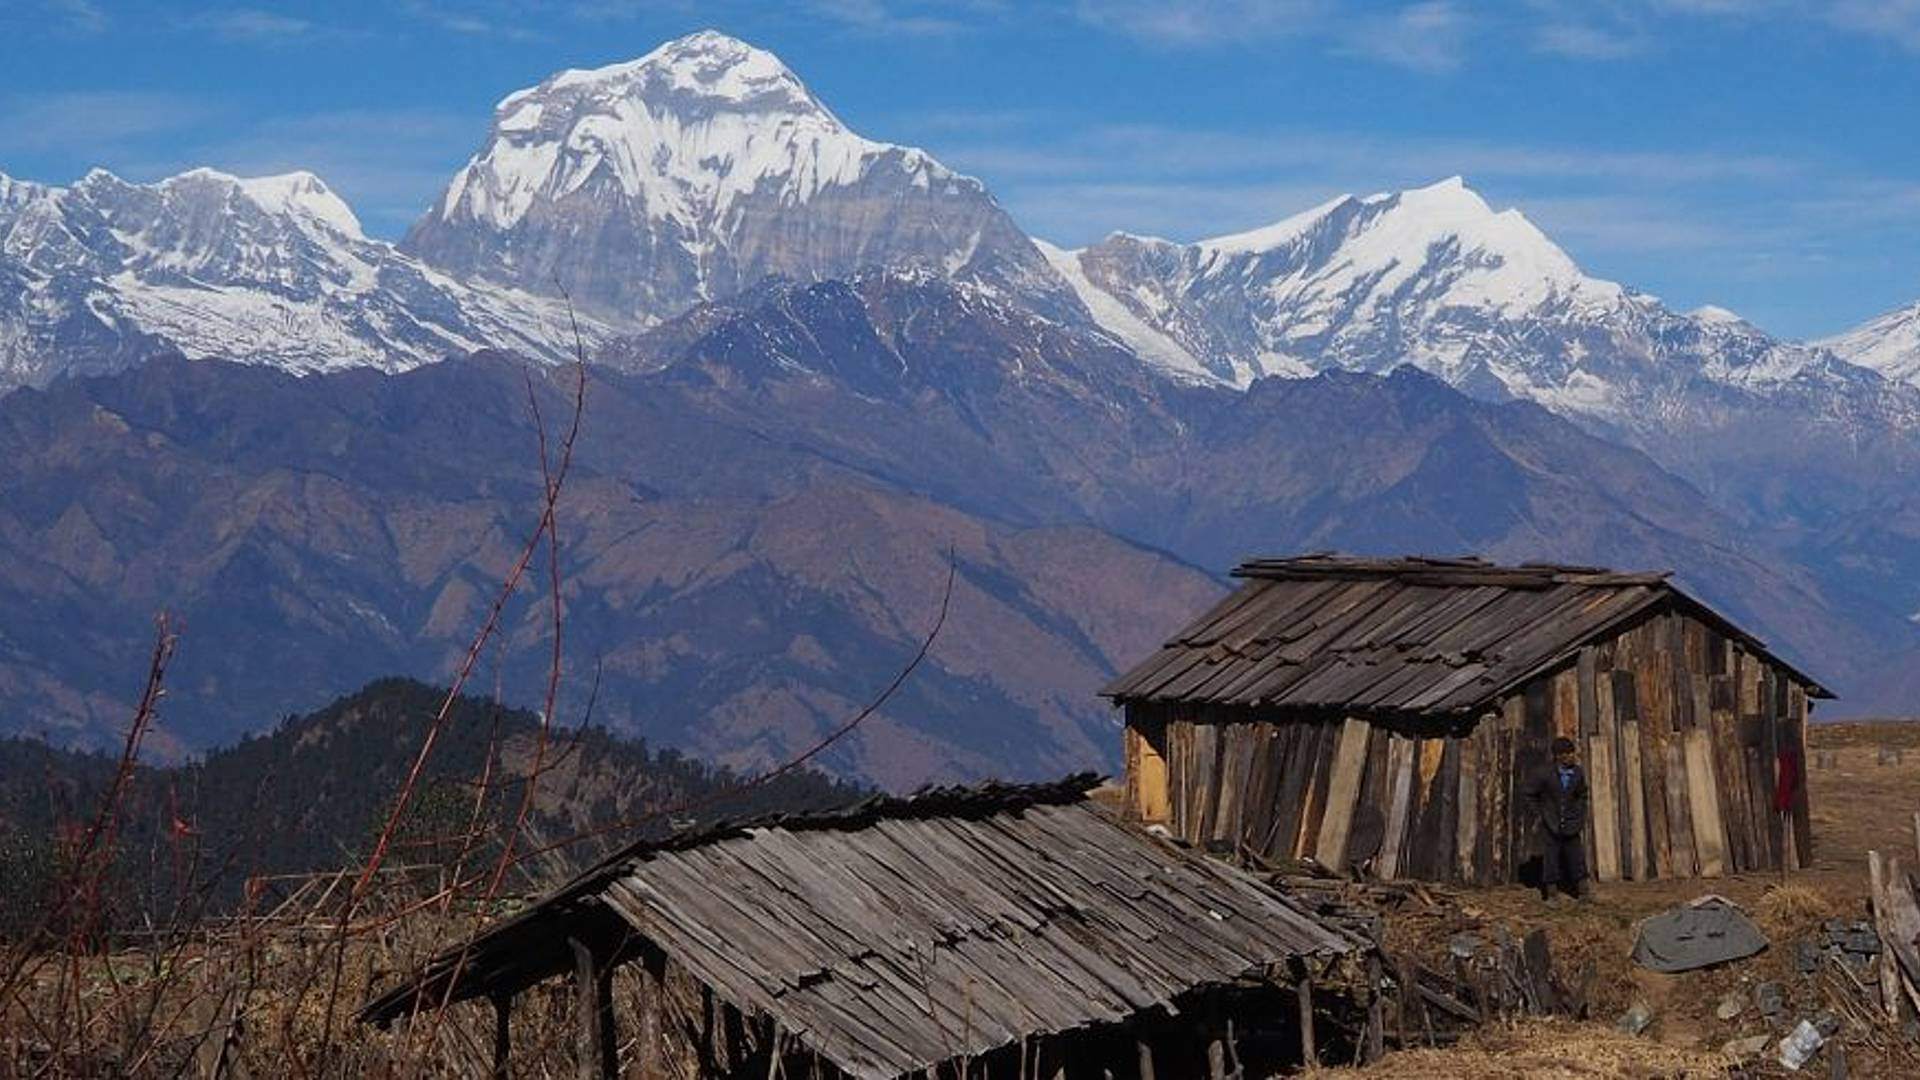 El trekking alternativo en los Annapurnas